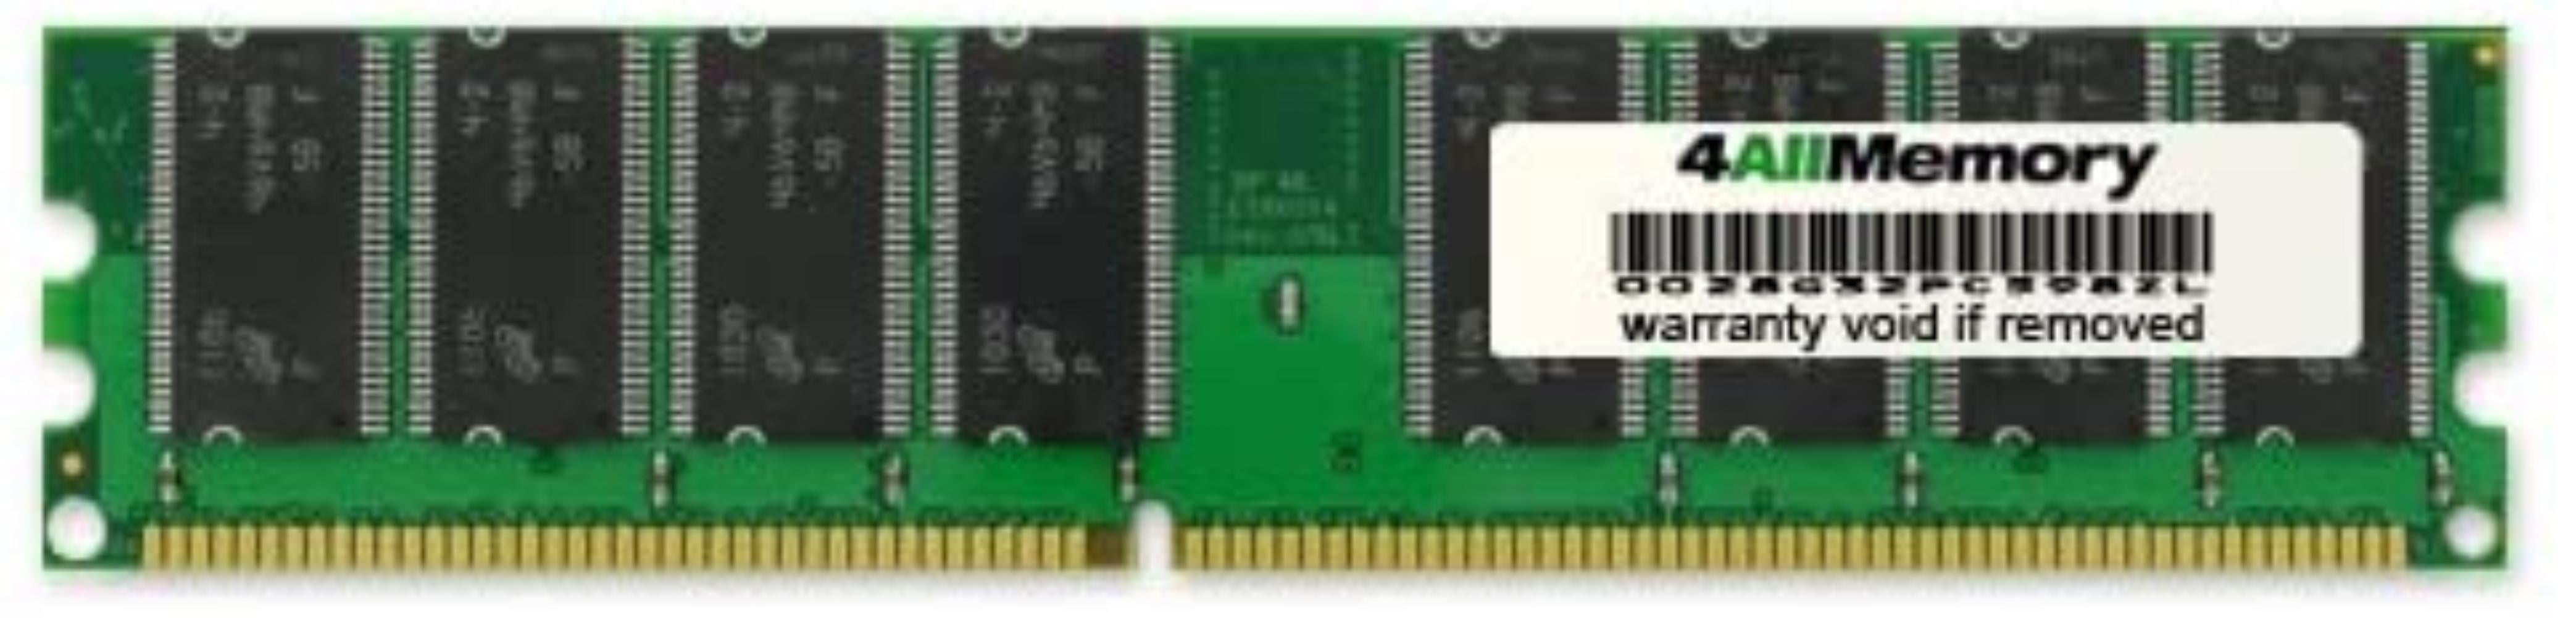 2GB 2x1GB DDR-400 PC3200 RAM Memory Upgrade Kit for the Compaq HP Presario SG1236IL